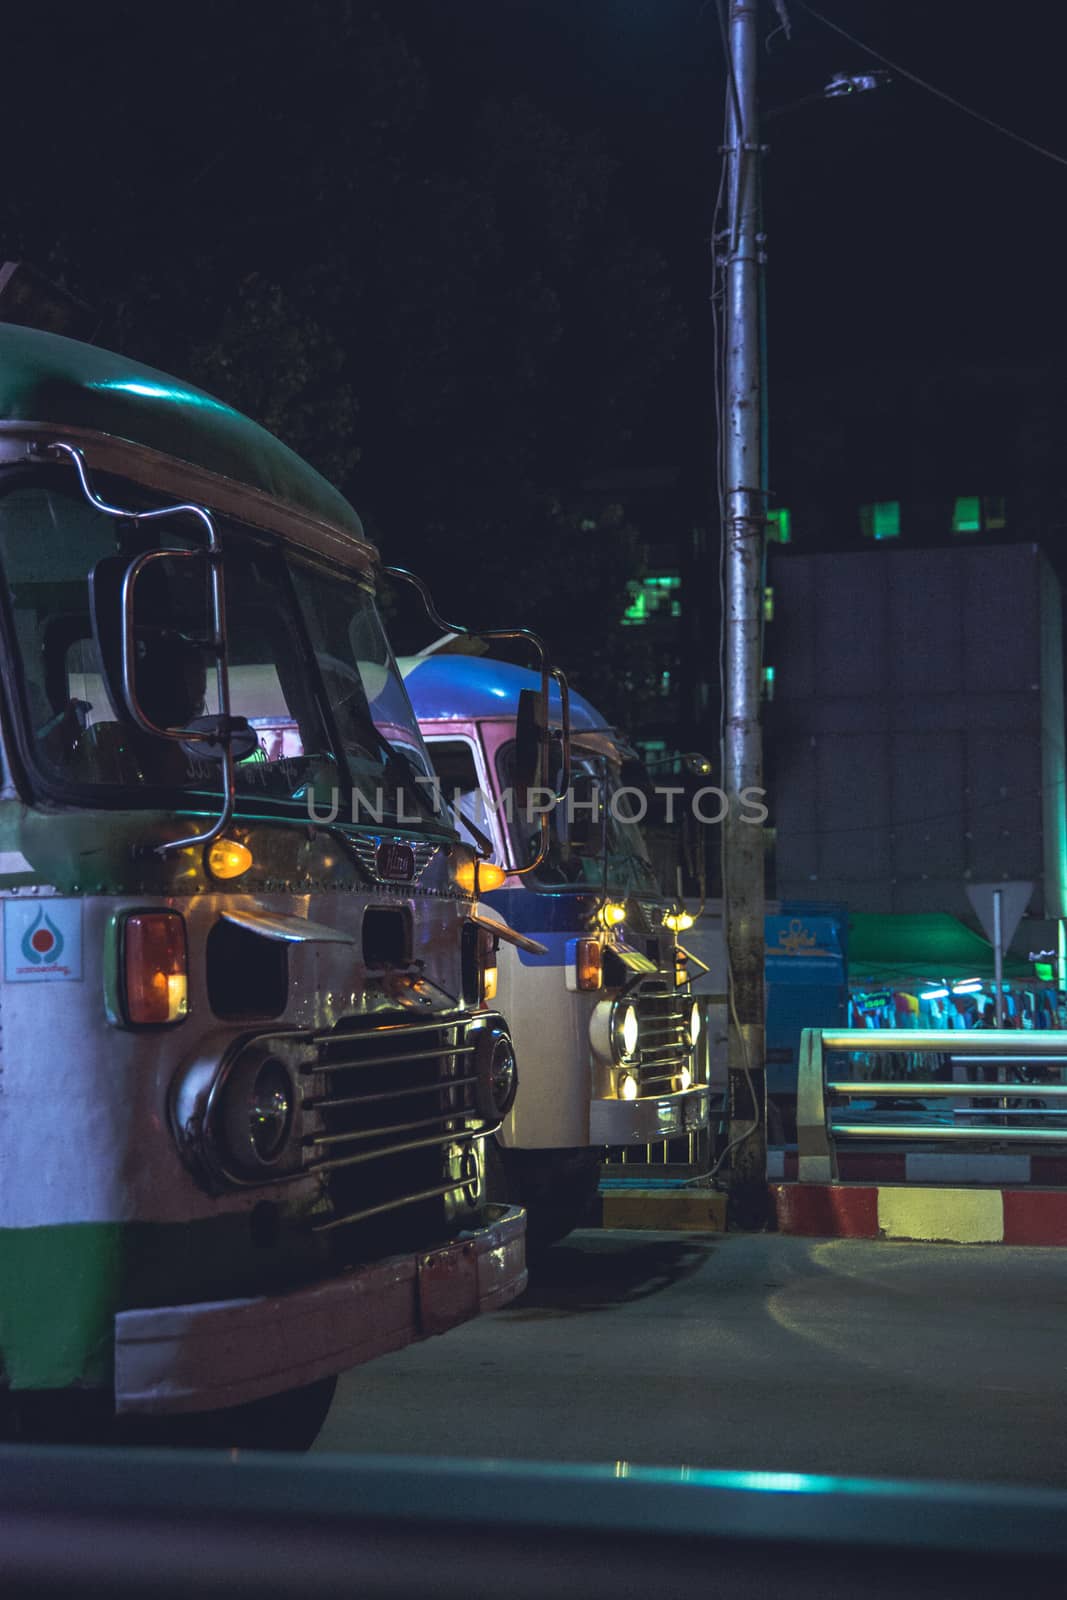 The Old Buses of Yangon, Myanmar by kargoo